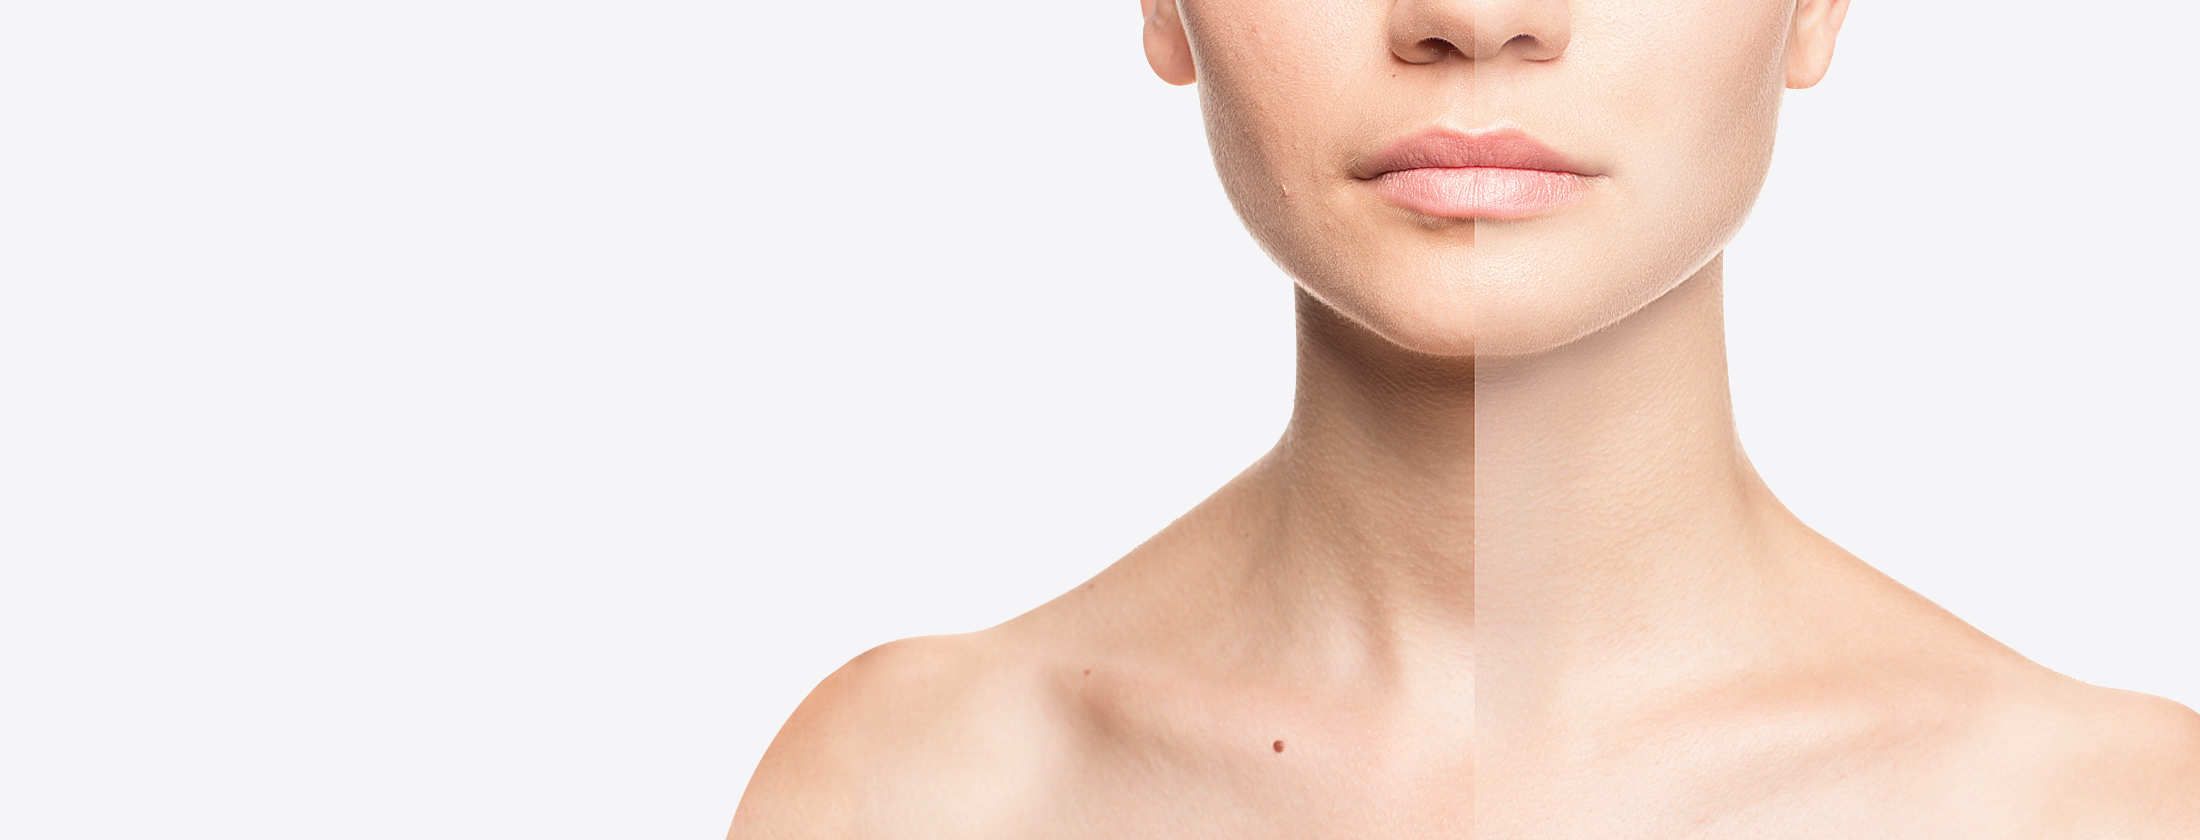 Makellose Haut einer Frau nach einer Microneedling-Behandlung zur Hautverjüngung und Hautbildverbesserung. Abgebildet sind Hautpartien am Hals. Die eine Seite sieht etwas faltig aus. Die andere verjüngt nach professioneller Hautbehandlung in Frankfurt.